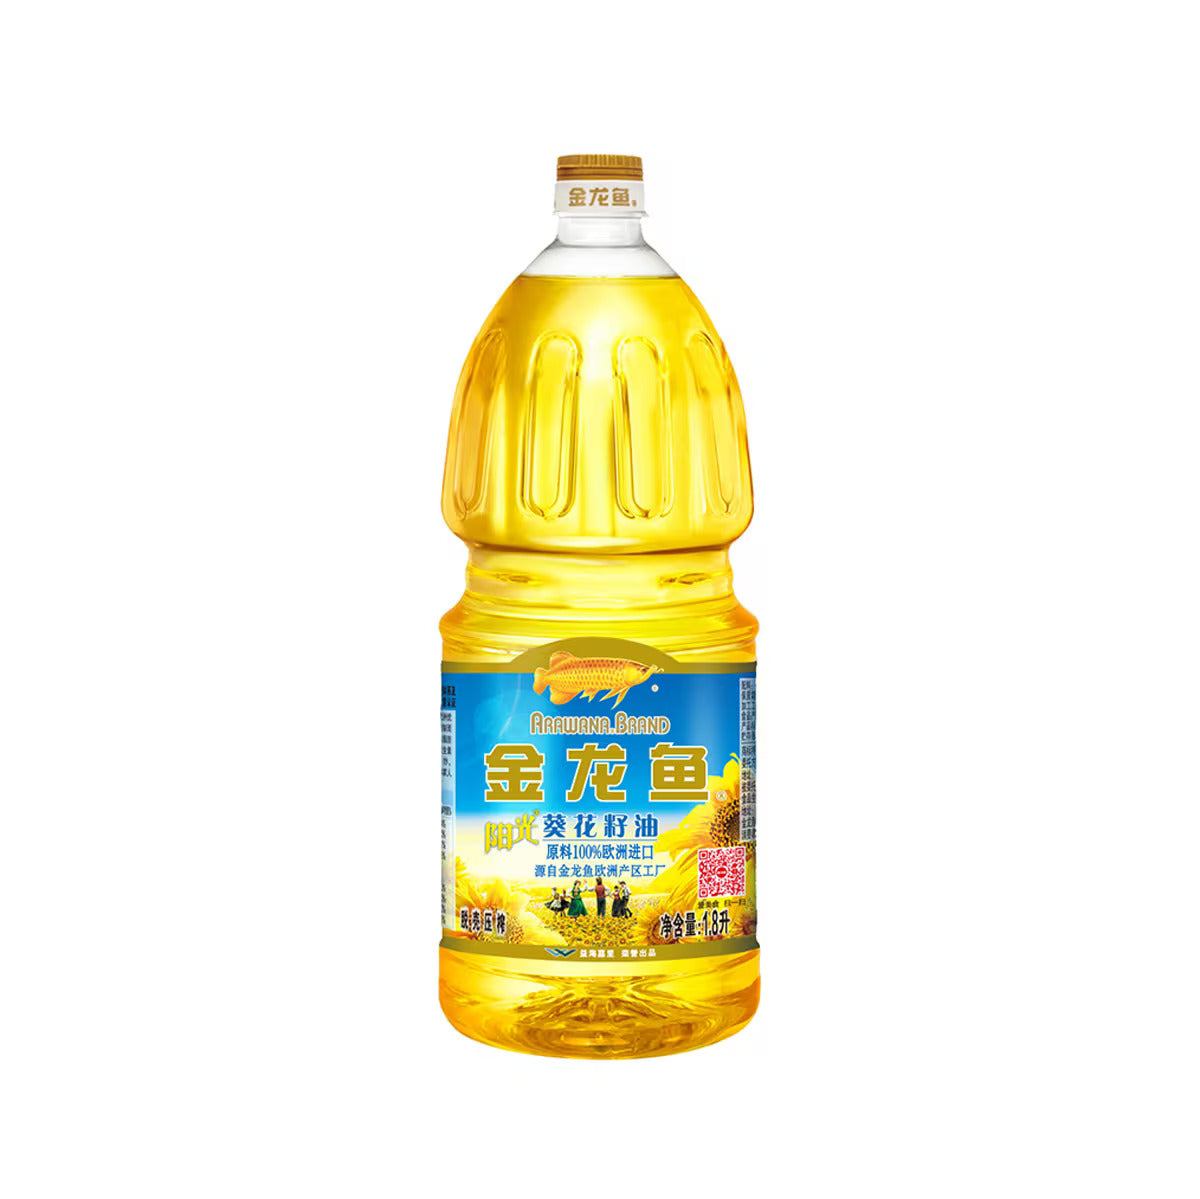 金龙鱼 · 葵花籽油 (1.8L)